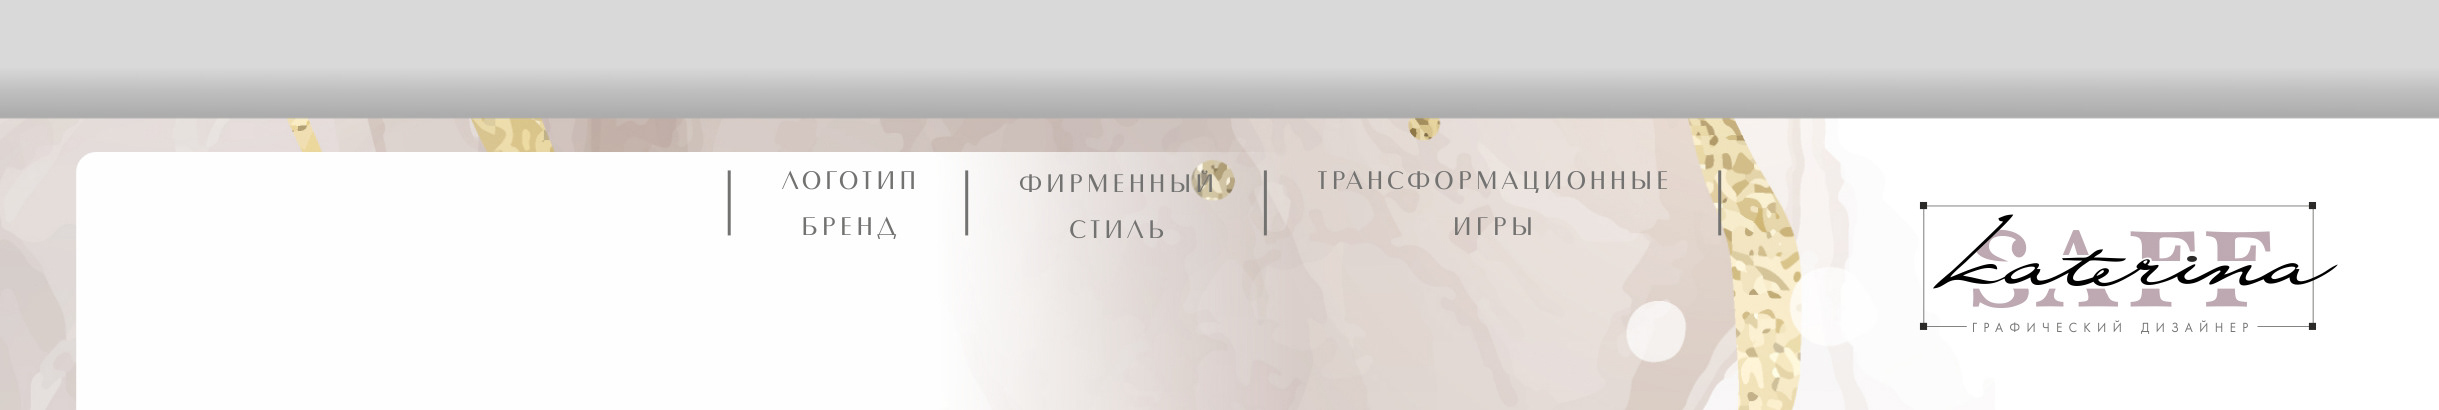 Екатерина Сафронова profil başlığı